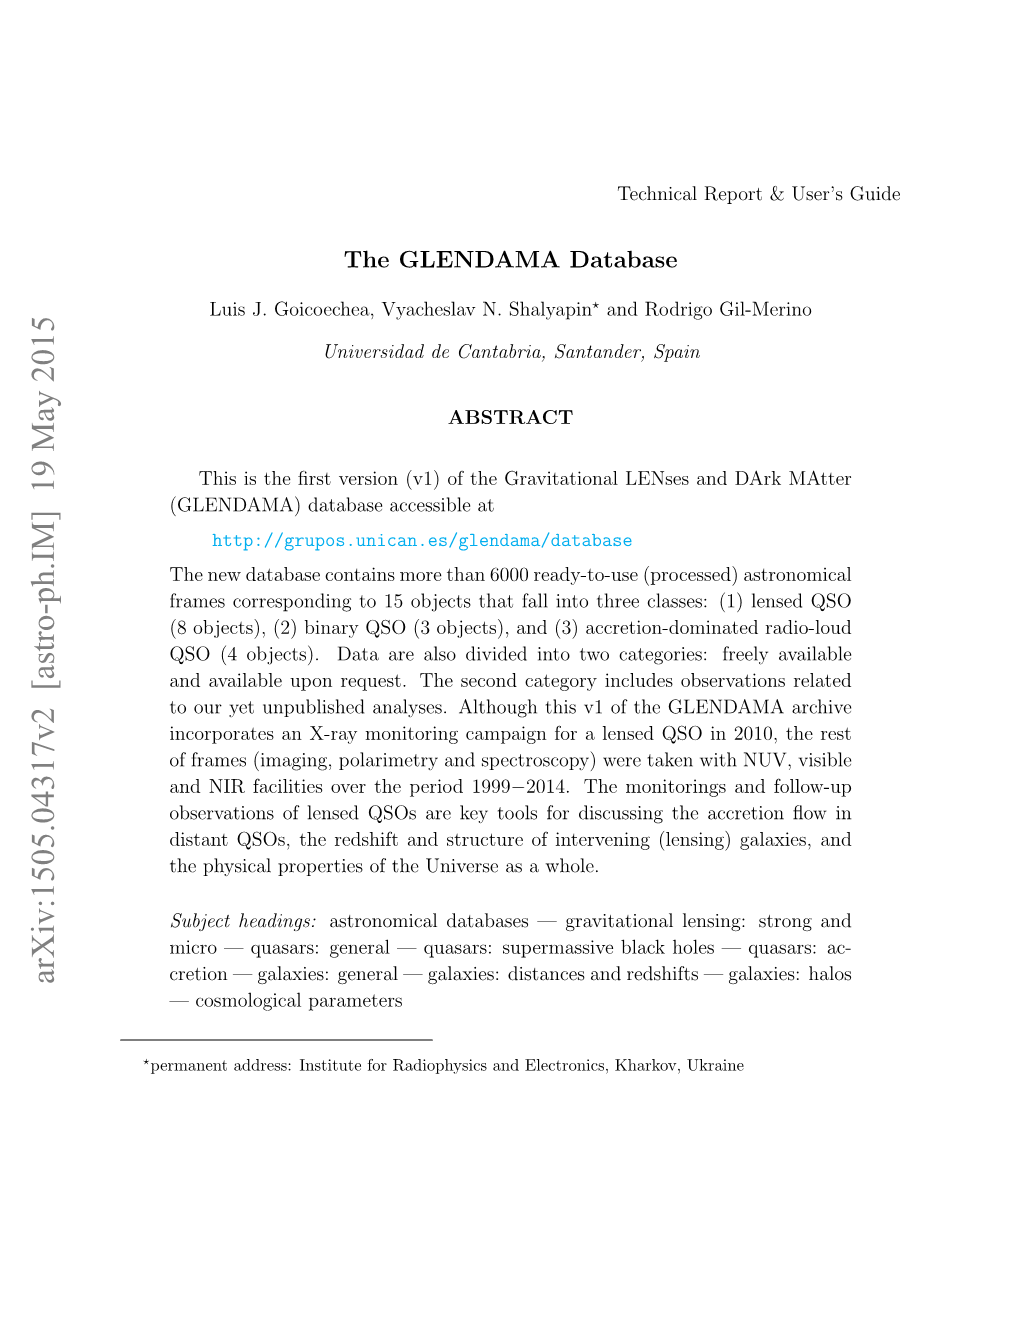 The GLENDAMA Database